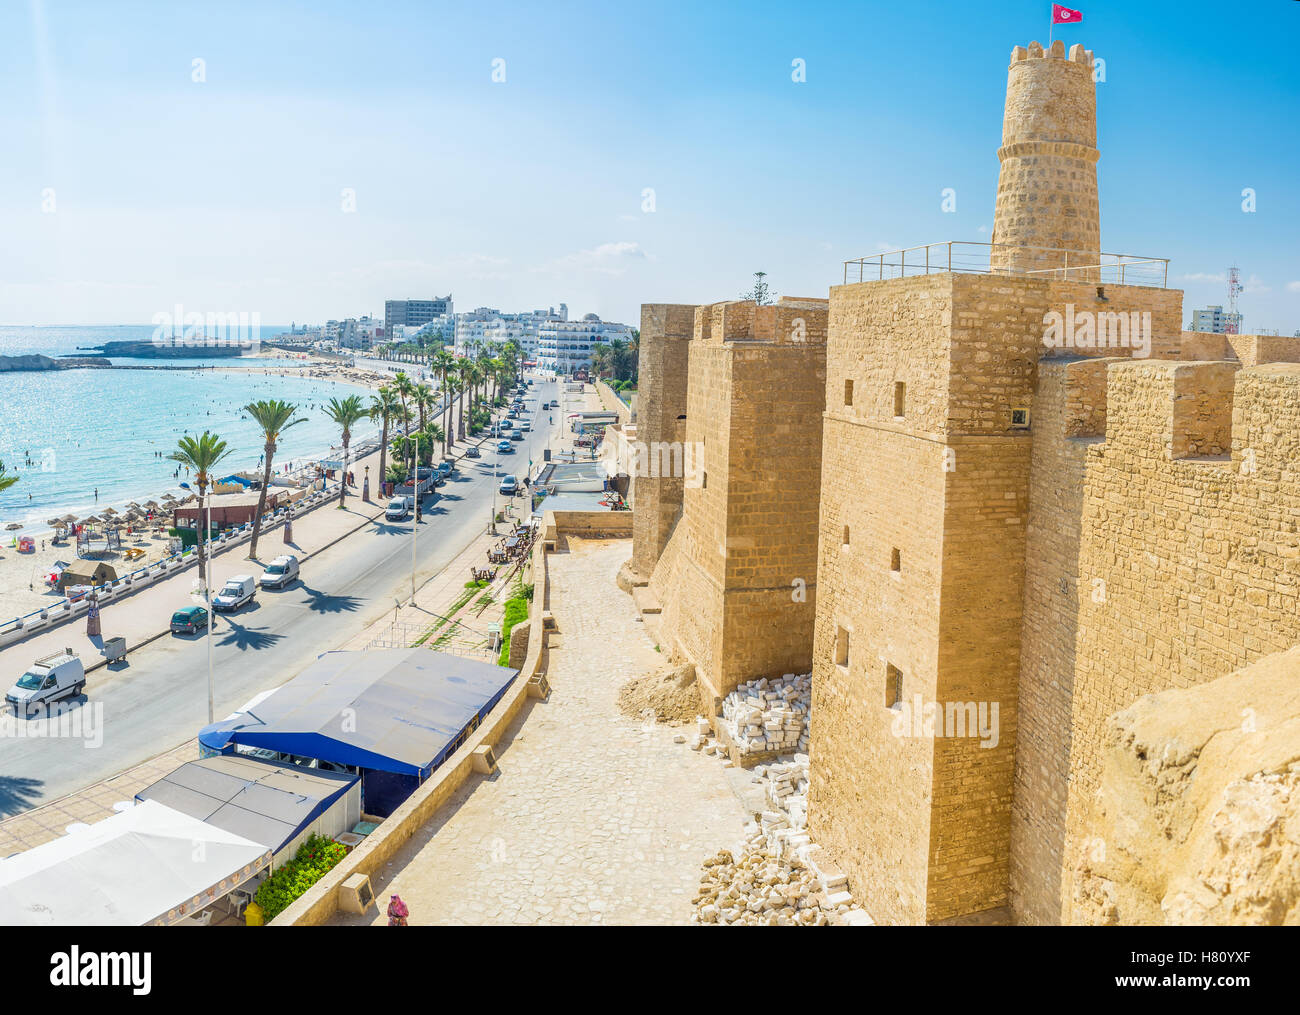 La antigua fortaleza defensiva domina los distritos costeros de Monastir, Túnez. Foto de stock